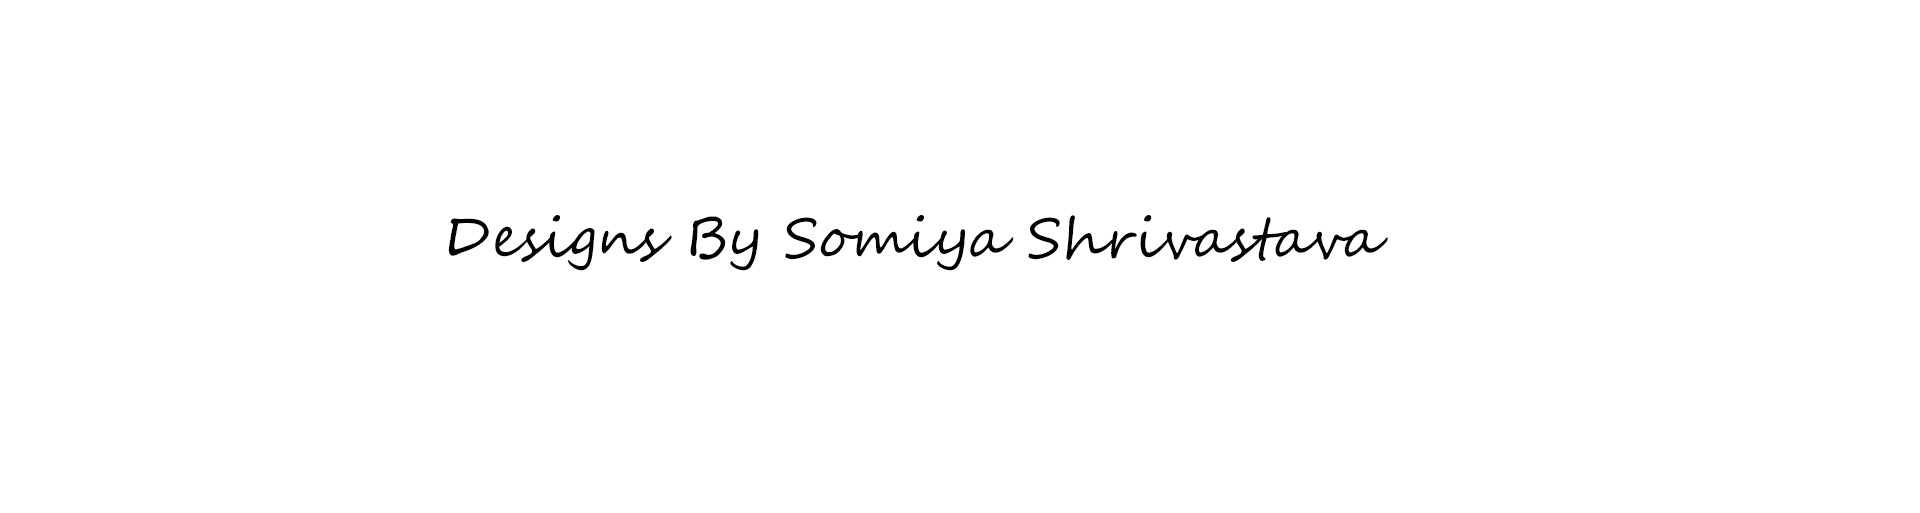 Somiya Shrivastava